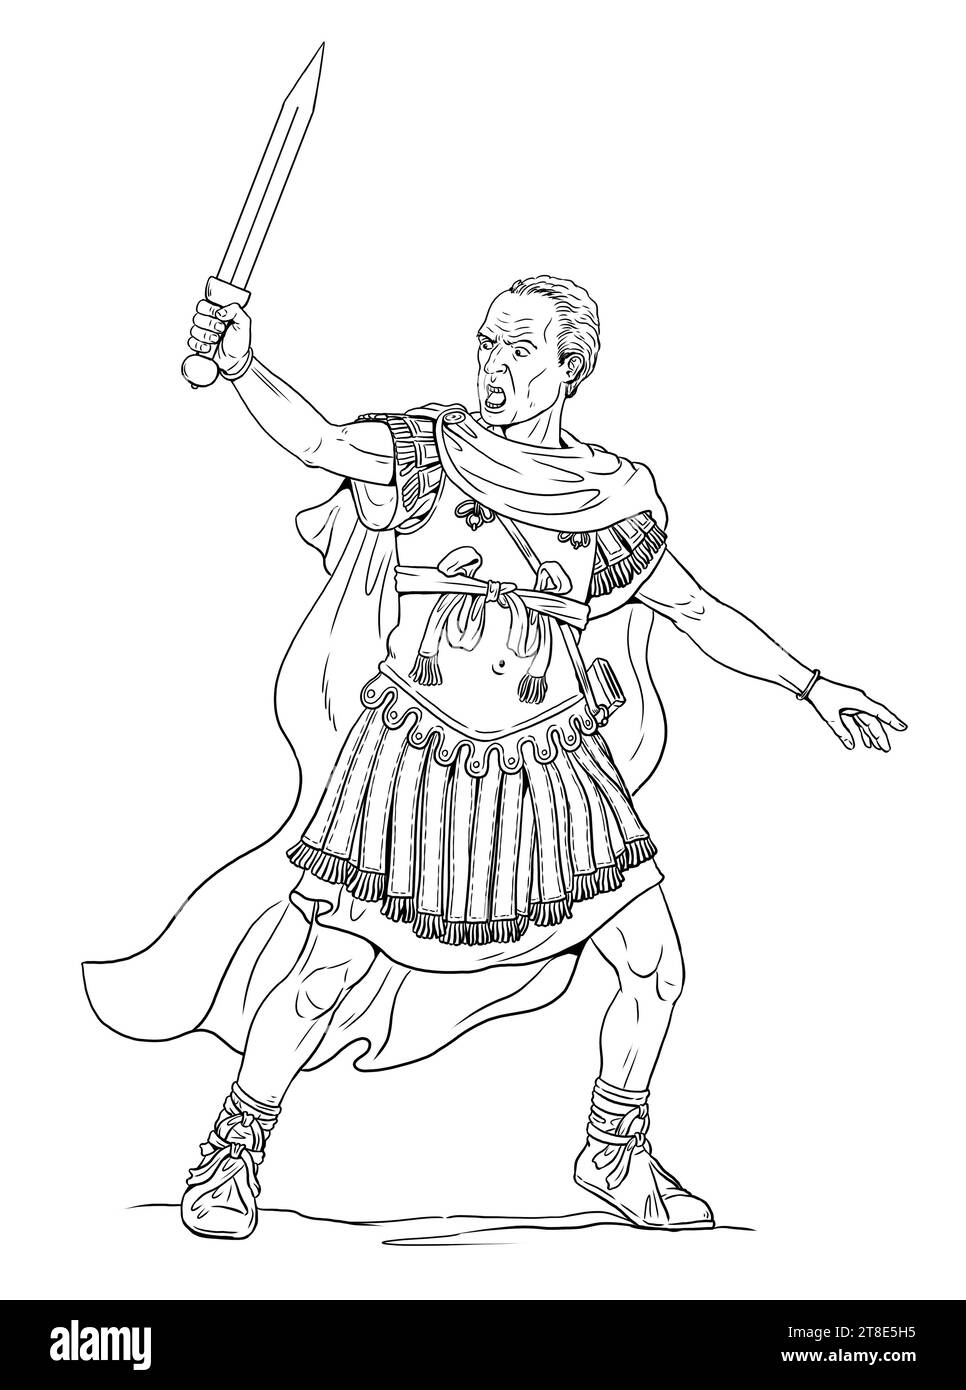 Roman general and imperator Gaius Julius Caesar. Handmade ancient warrior drawing. Stock Photo